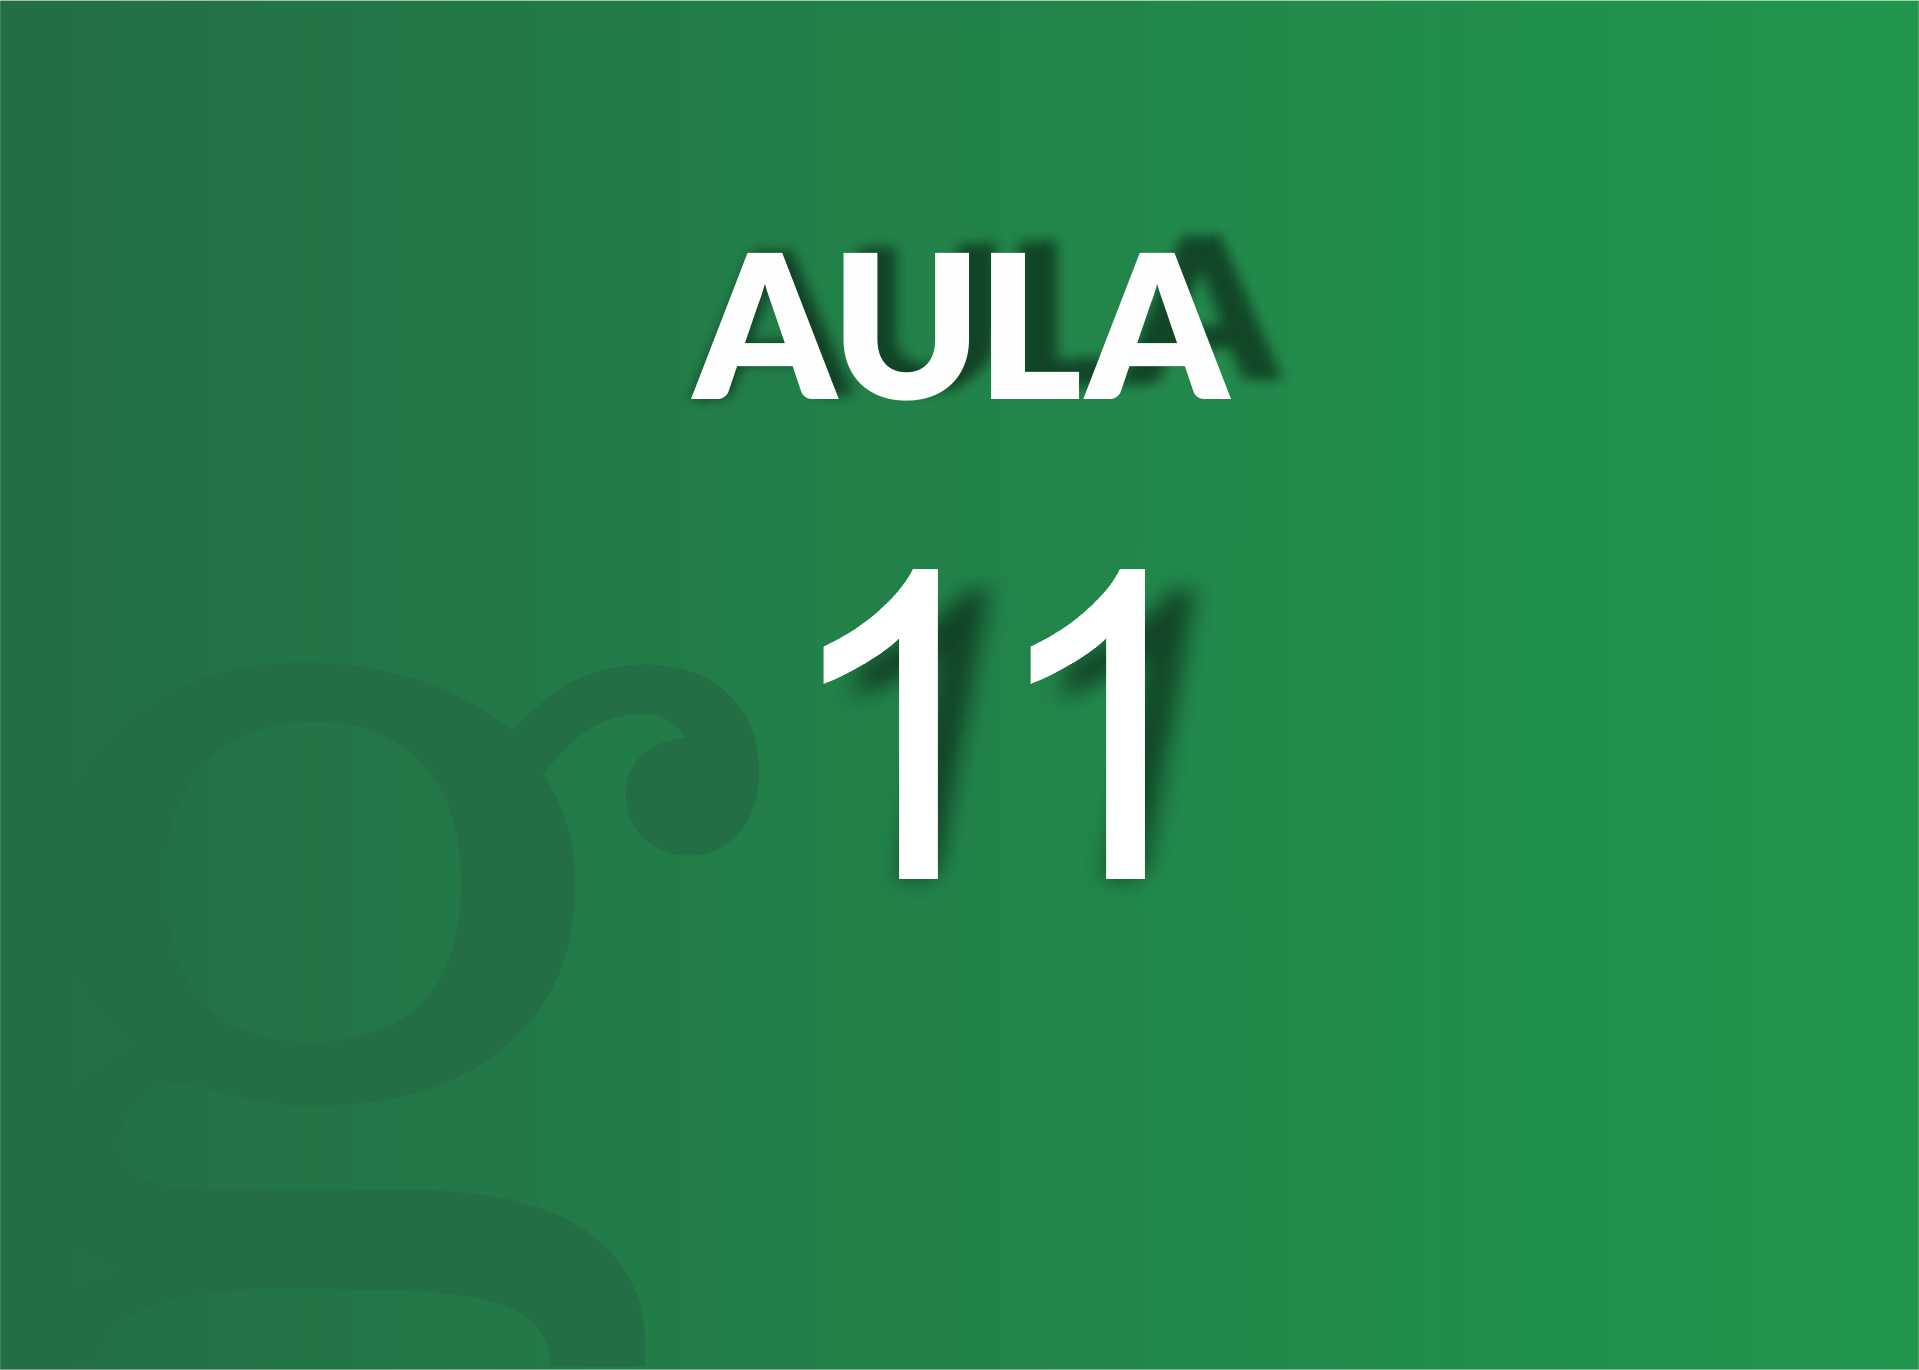 AULA 11 - Taller sobre perspectiva de género - Neuquén 2020